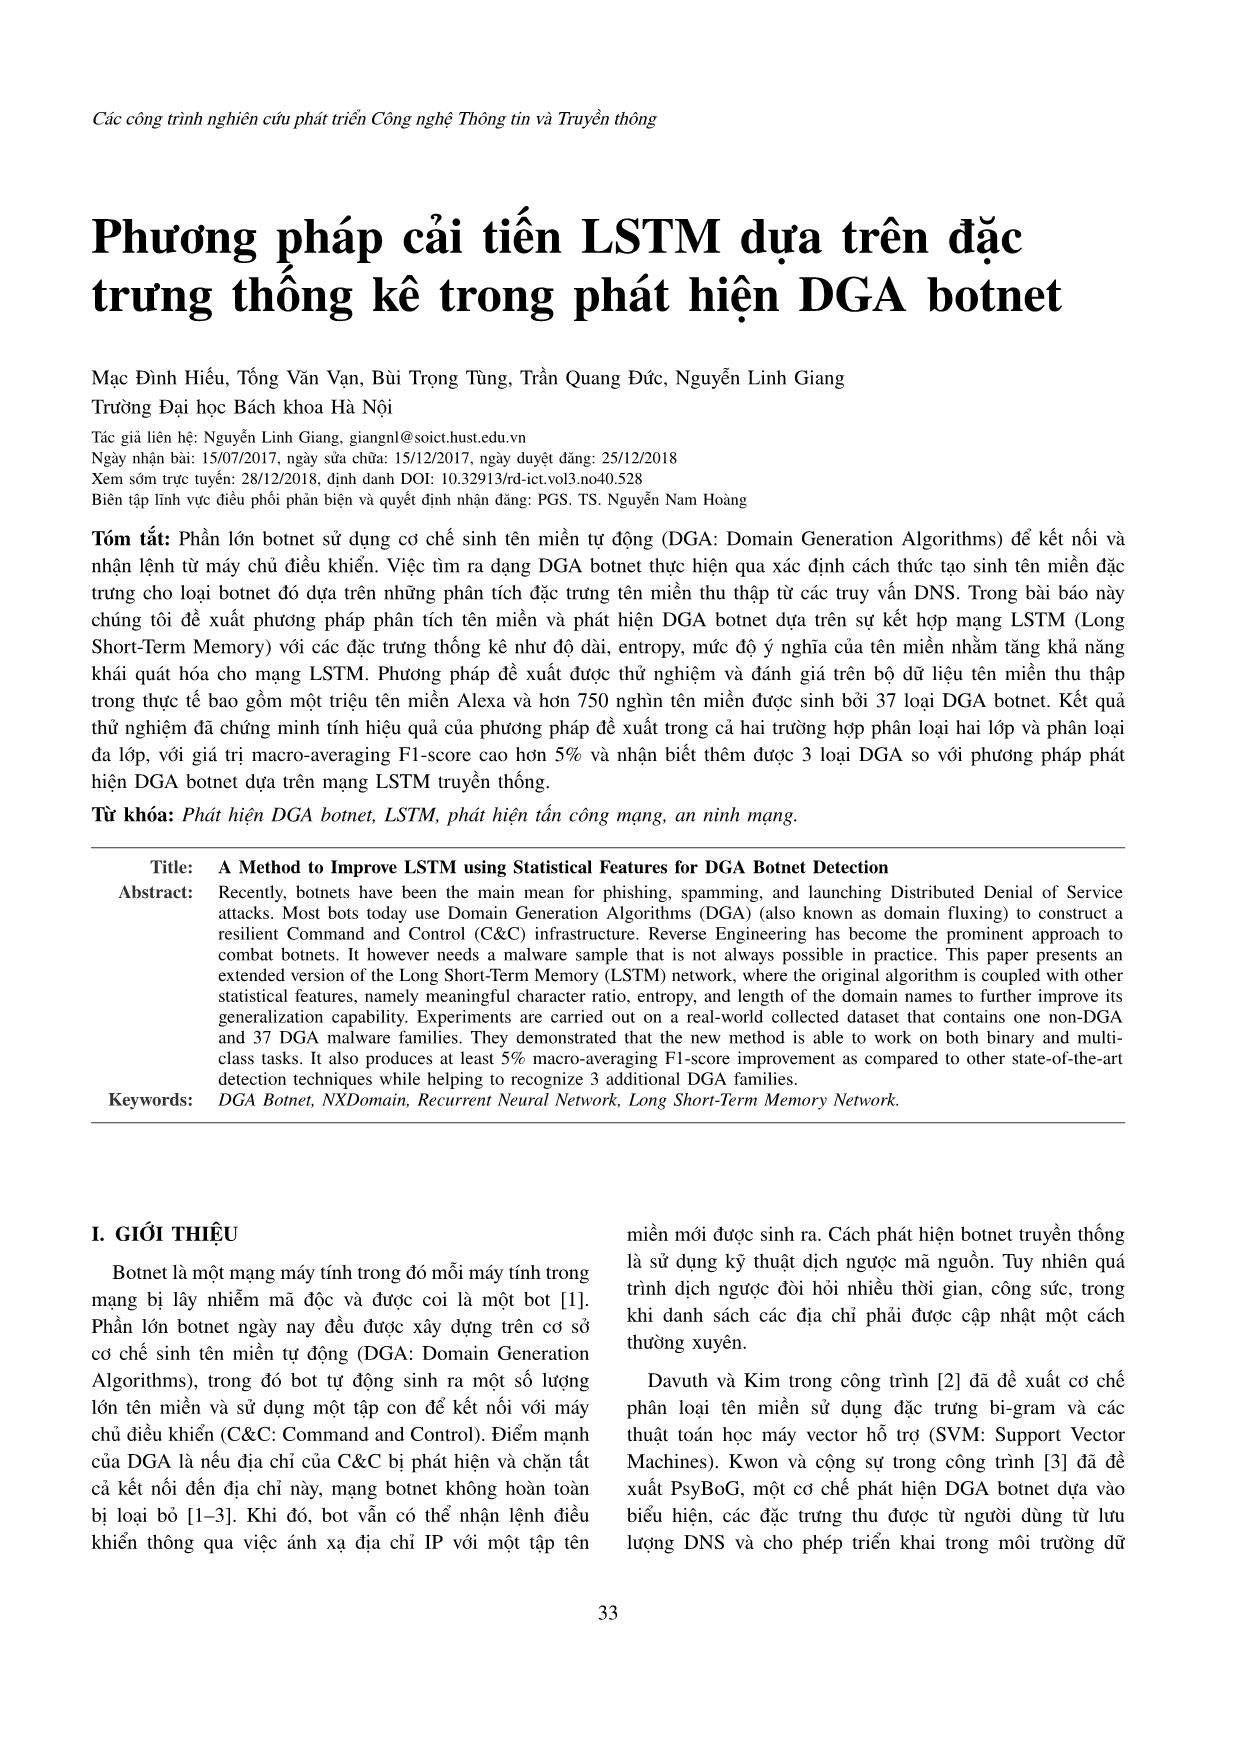 Phương pháp cải tiến LSTM dựa trên đặc trưng thống kê trong phát hiện DGA botnet trang 1